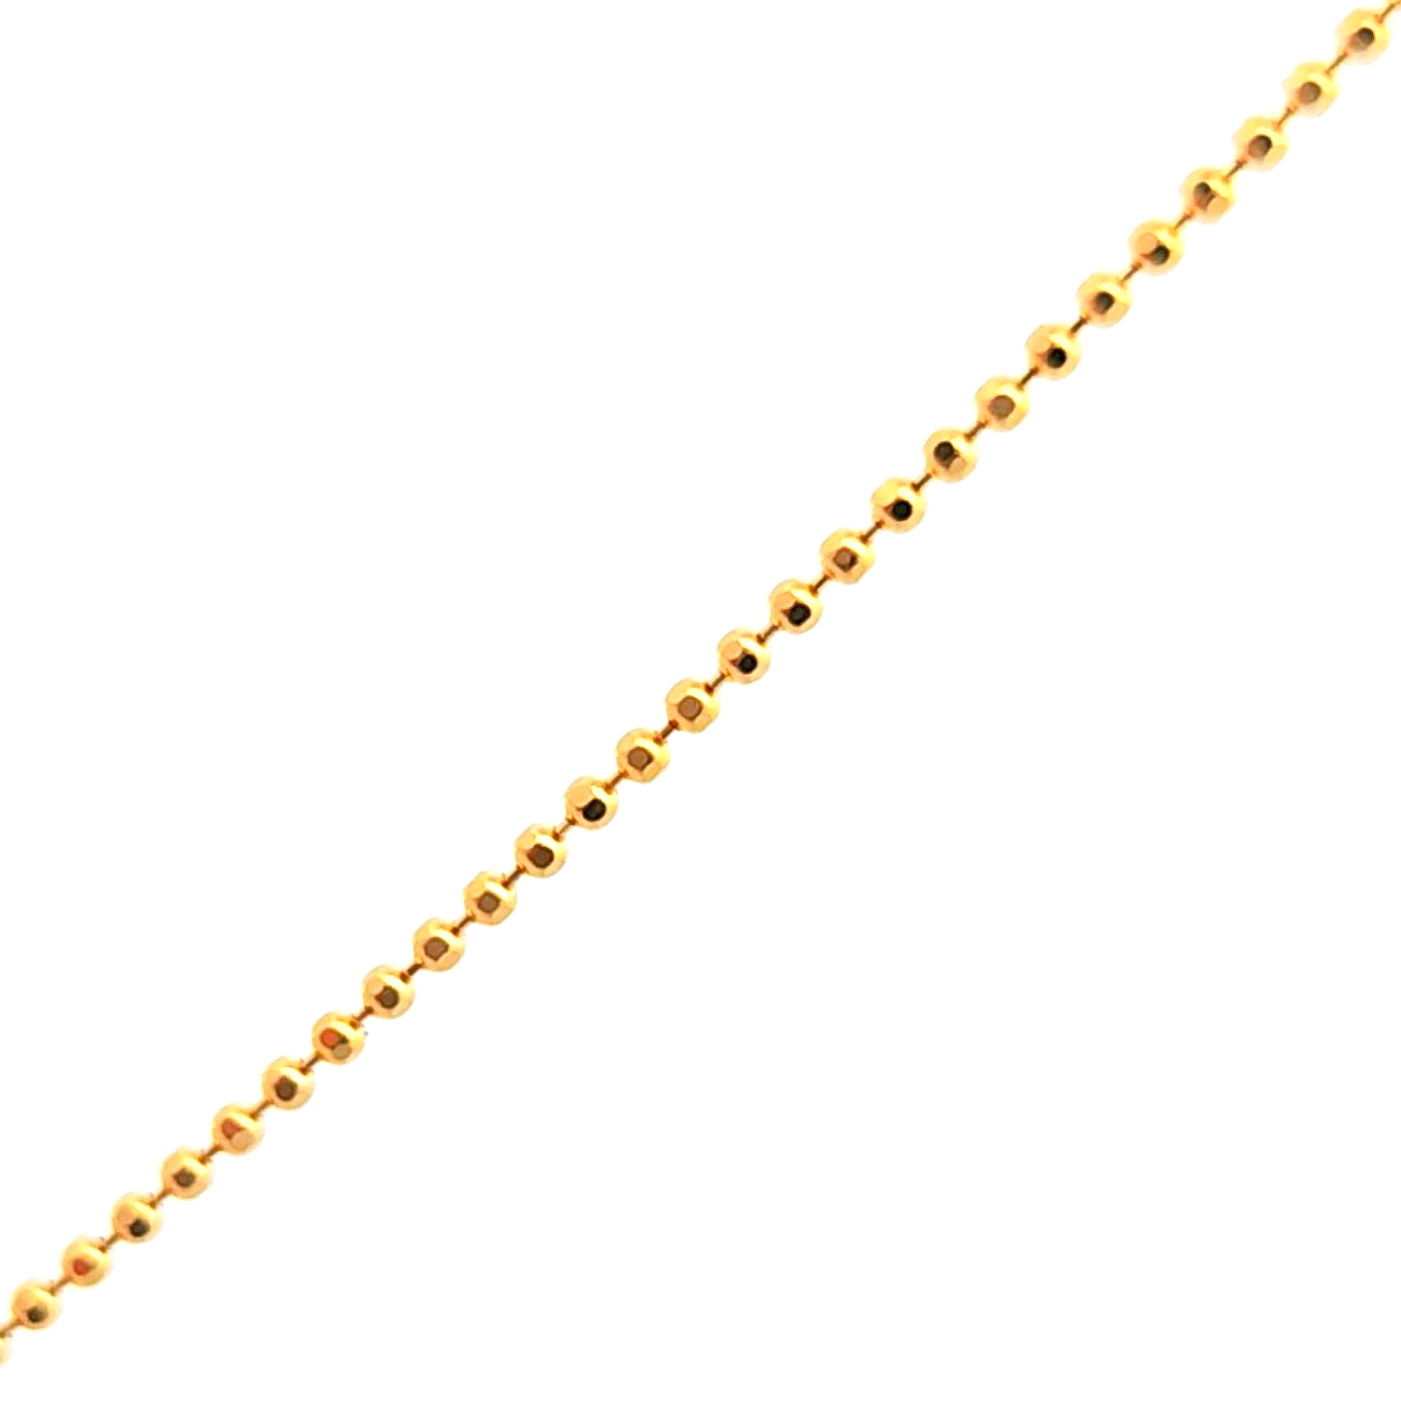 Cadena oro amarillo 18k de pelotas de 1mm medida 40 cm, peso 2,64 gr 2